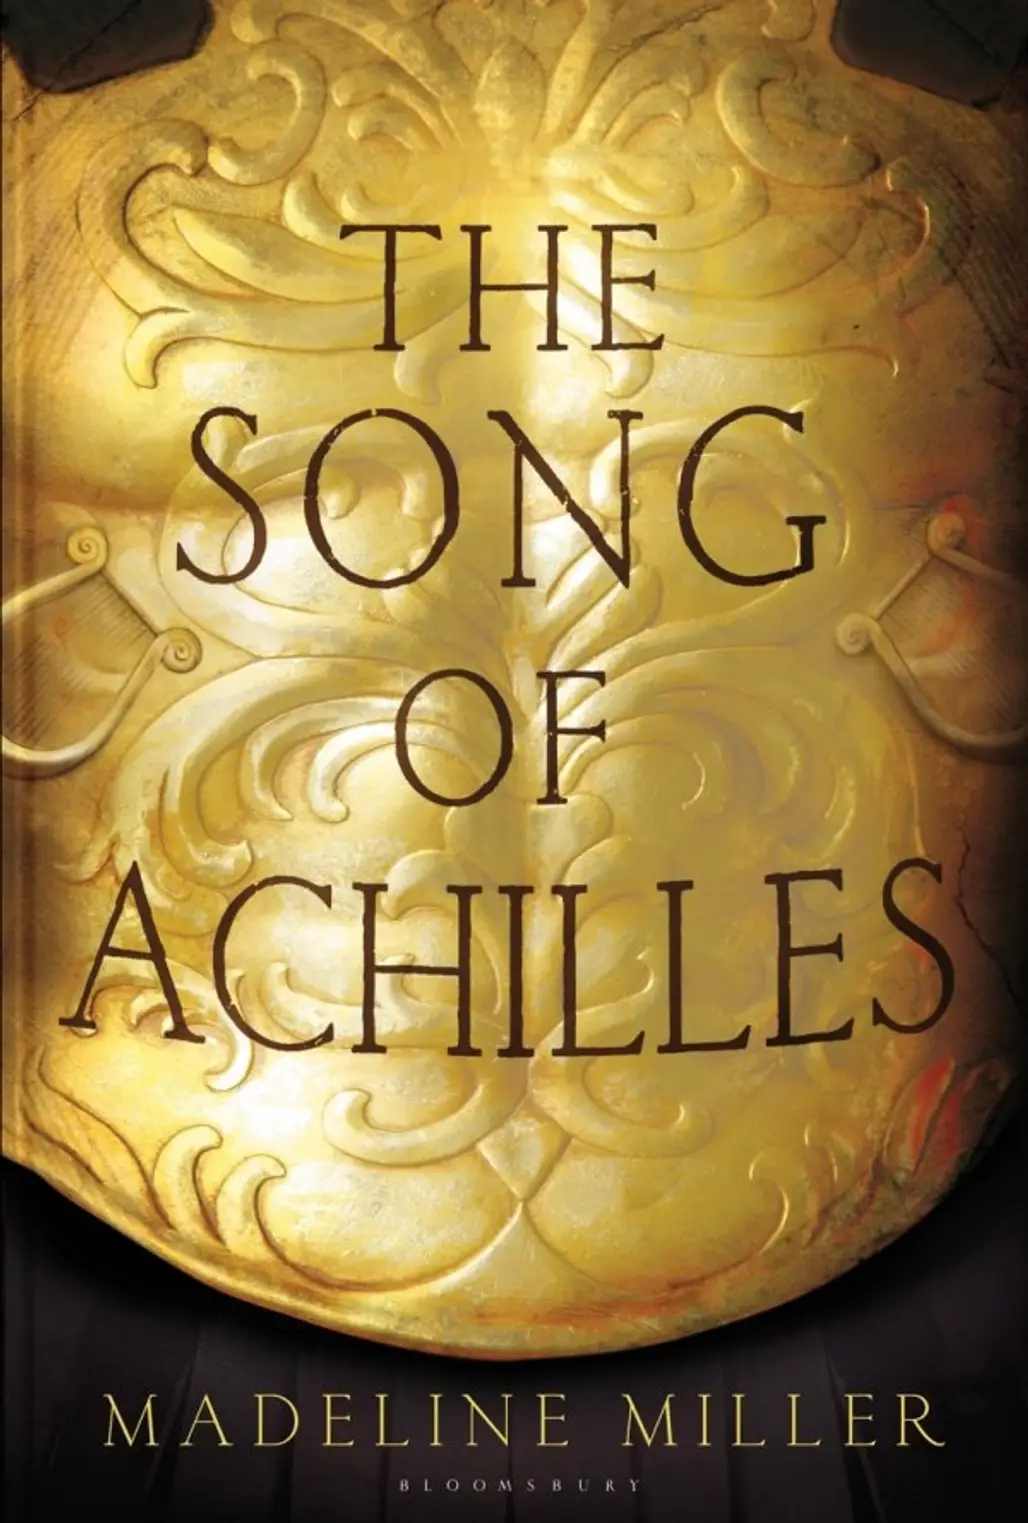 Achilles’ Love - Sophocles